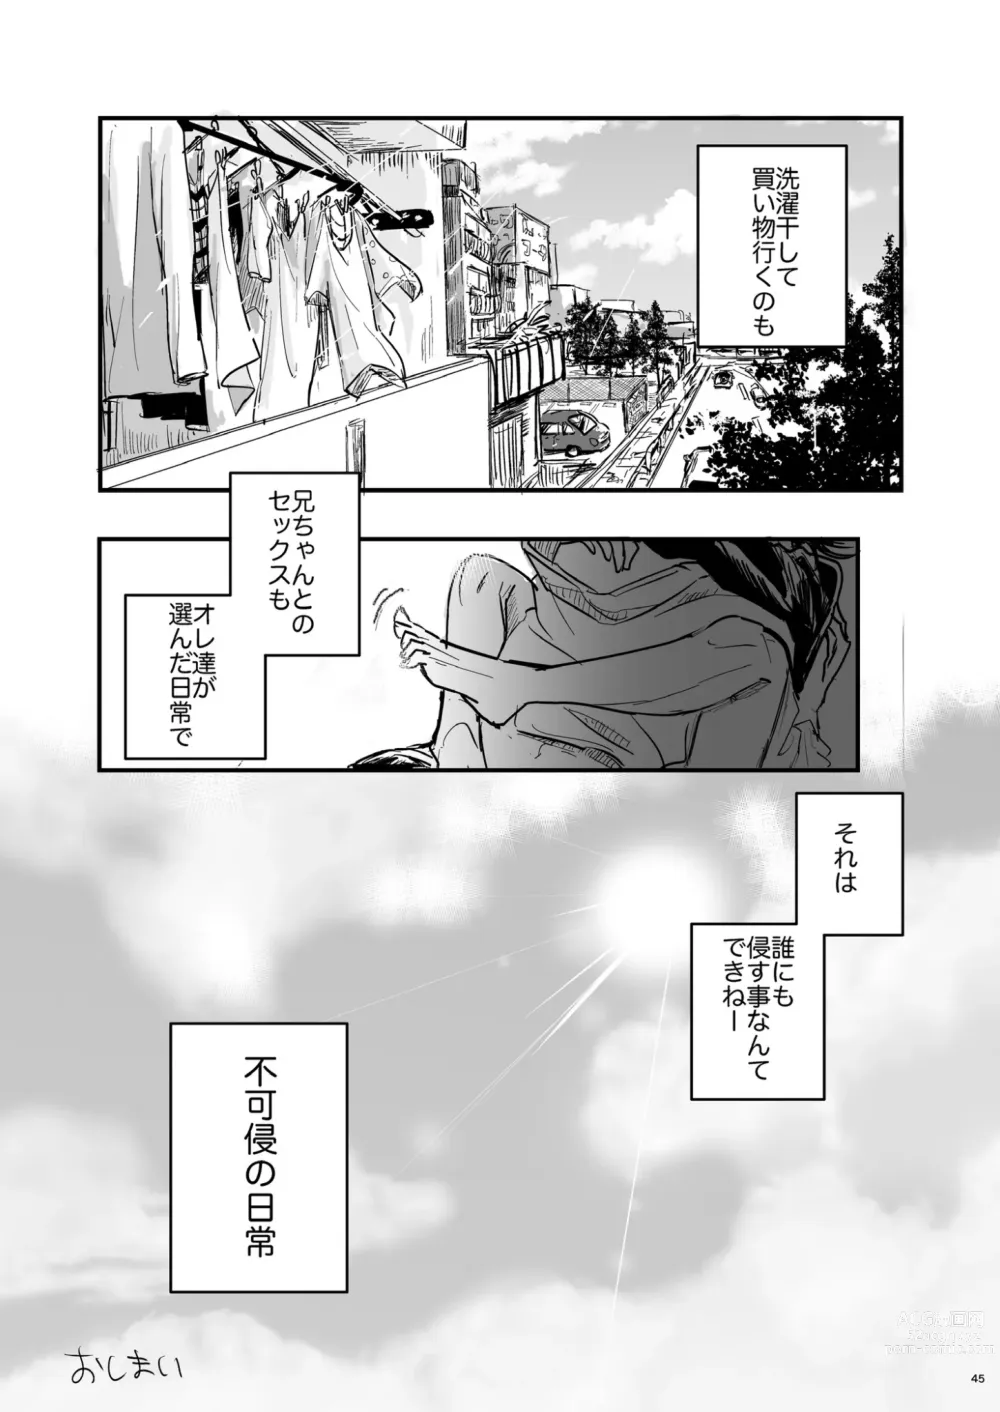 Page 44 of doujinshi Fukashin no Nichijou